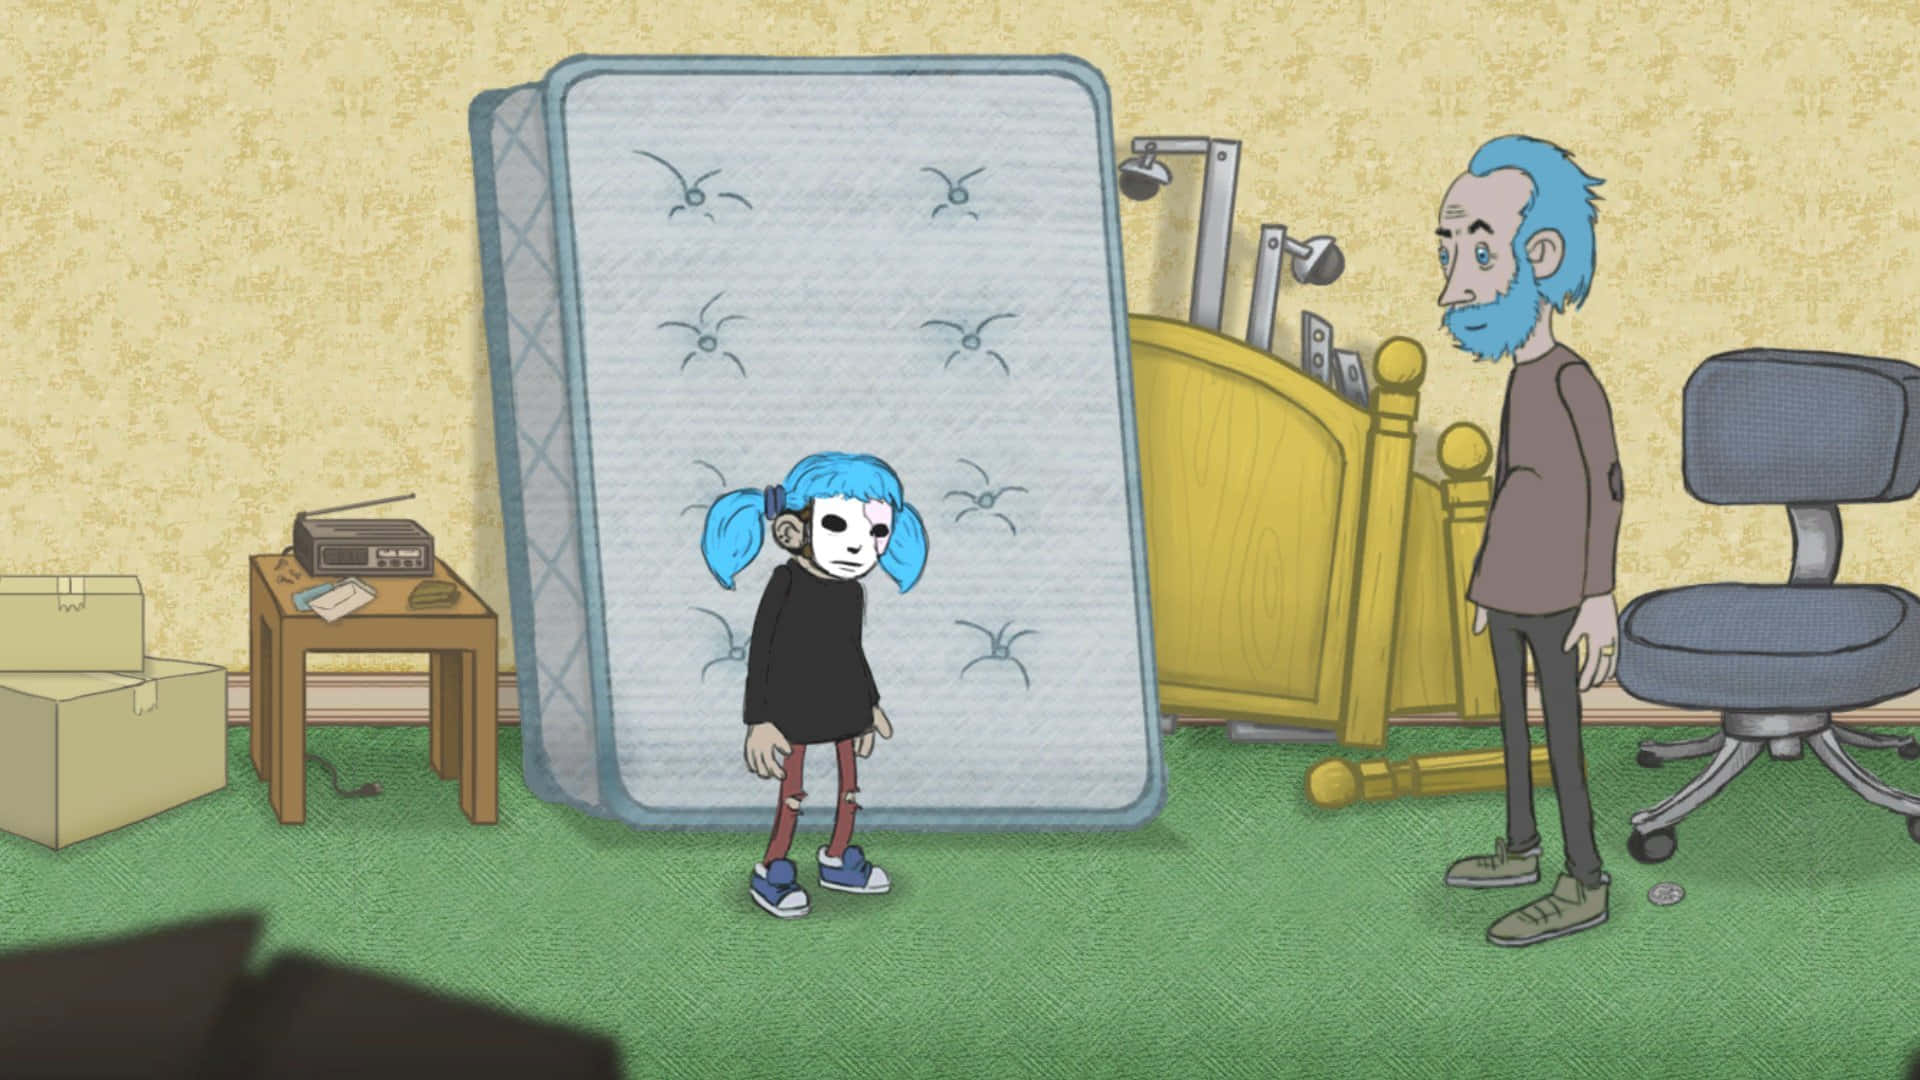 Illustrazioneoscura E Surreale Che Raffigura Sally Face, Un Unico Protagonista Dai Capelli Blu Con Una Misteriosa Maschera Protesica.